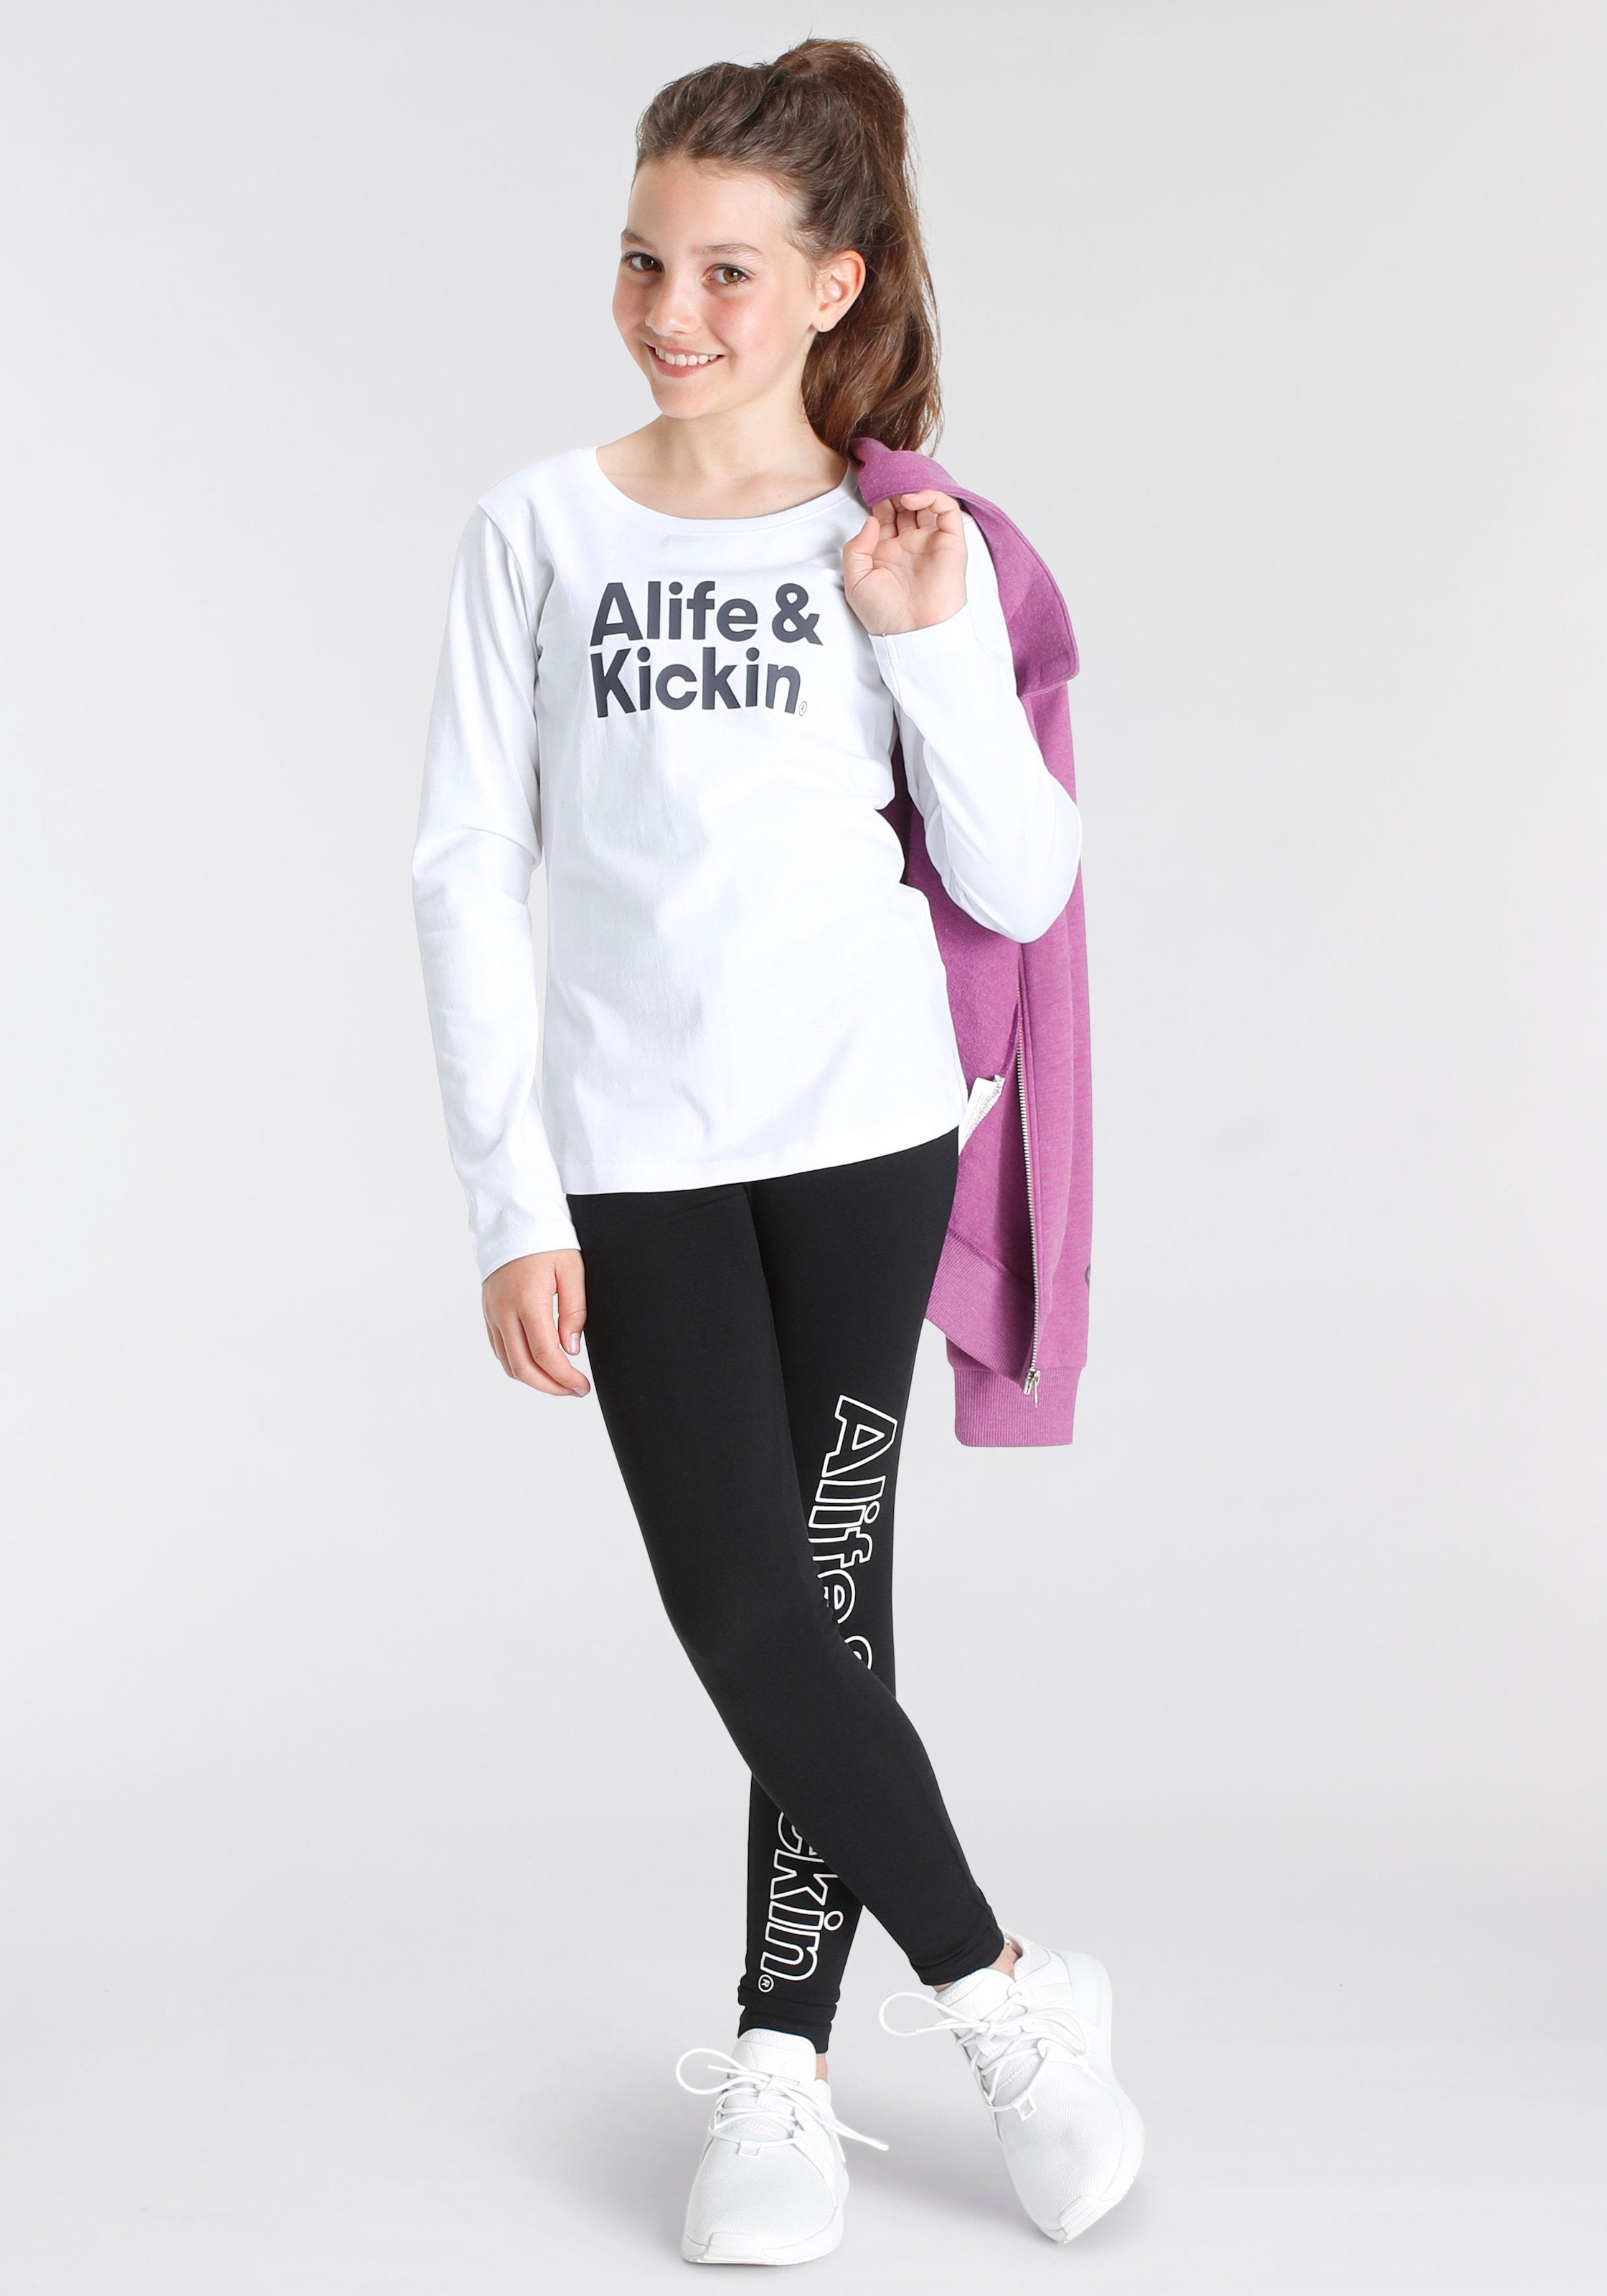 & Alife BAUR & Stehkragen«, Kids. Sweatjacke »mit bestellen Kickin hohem für NEUE online MARKE! Kickin | Alife